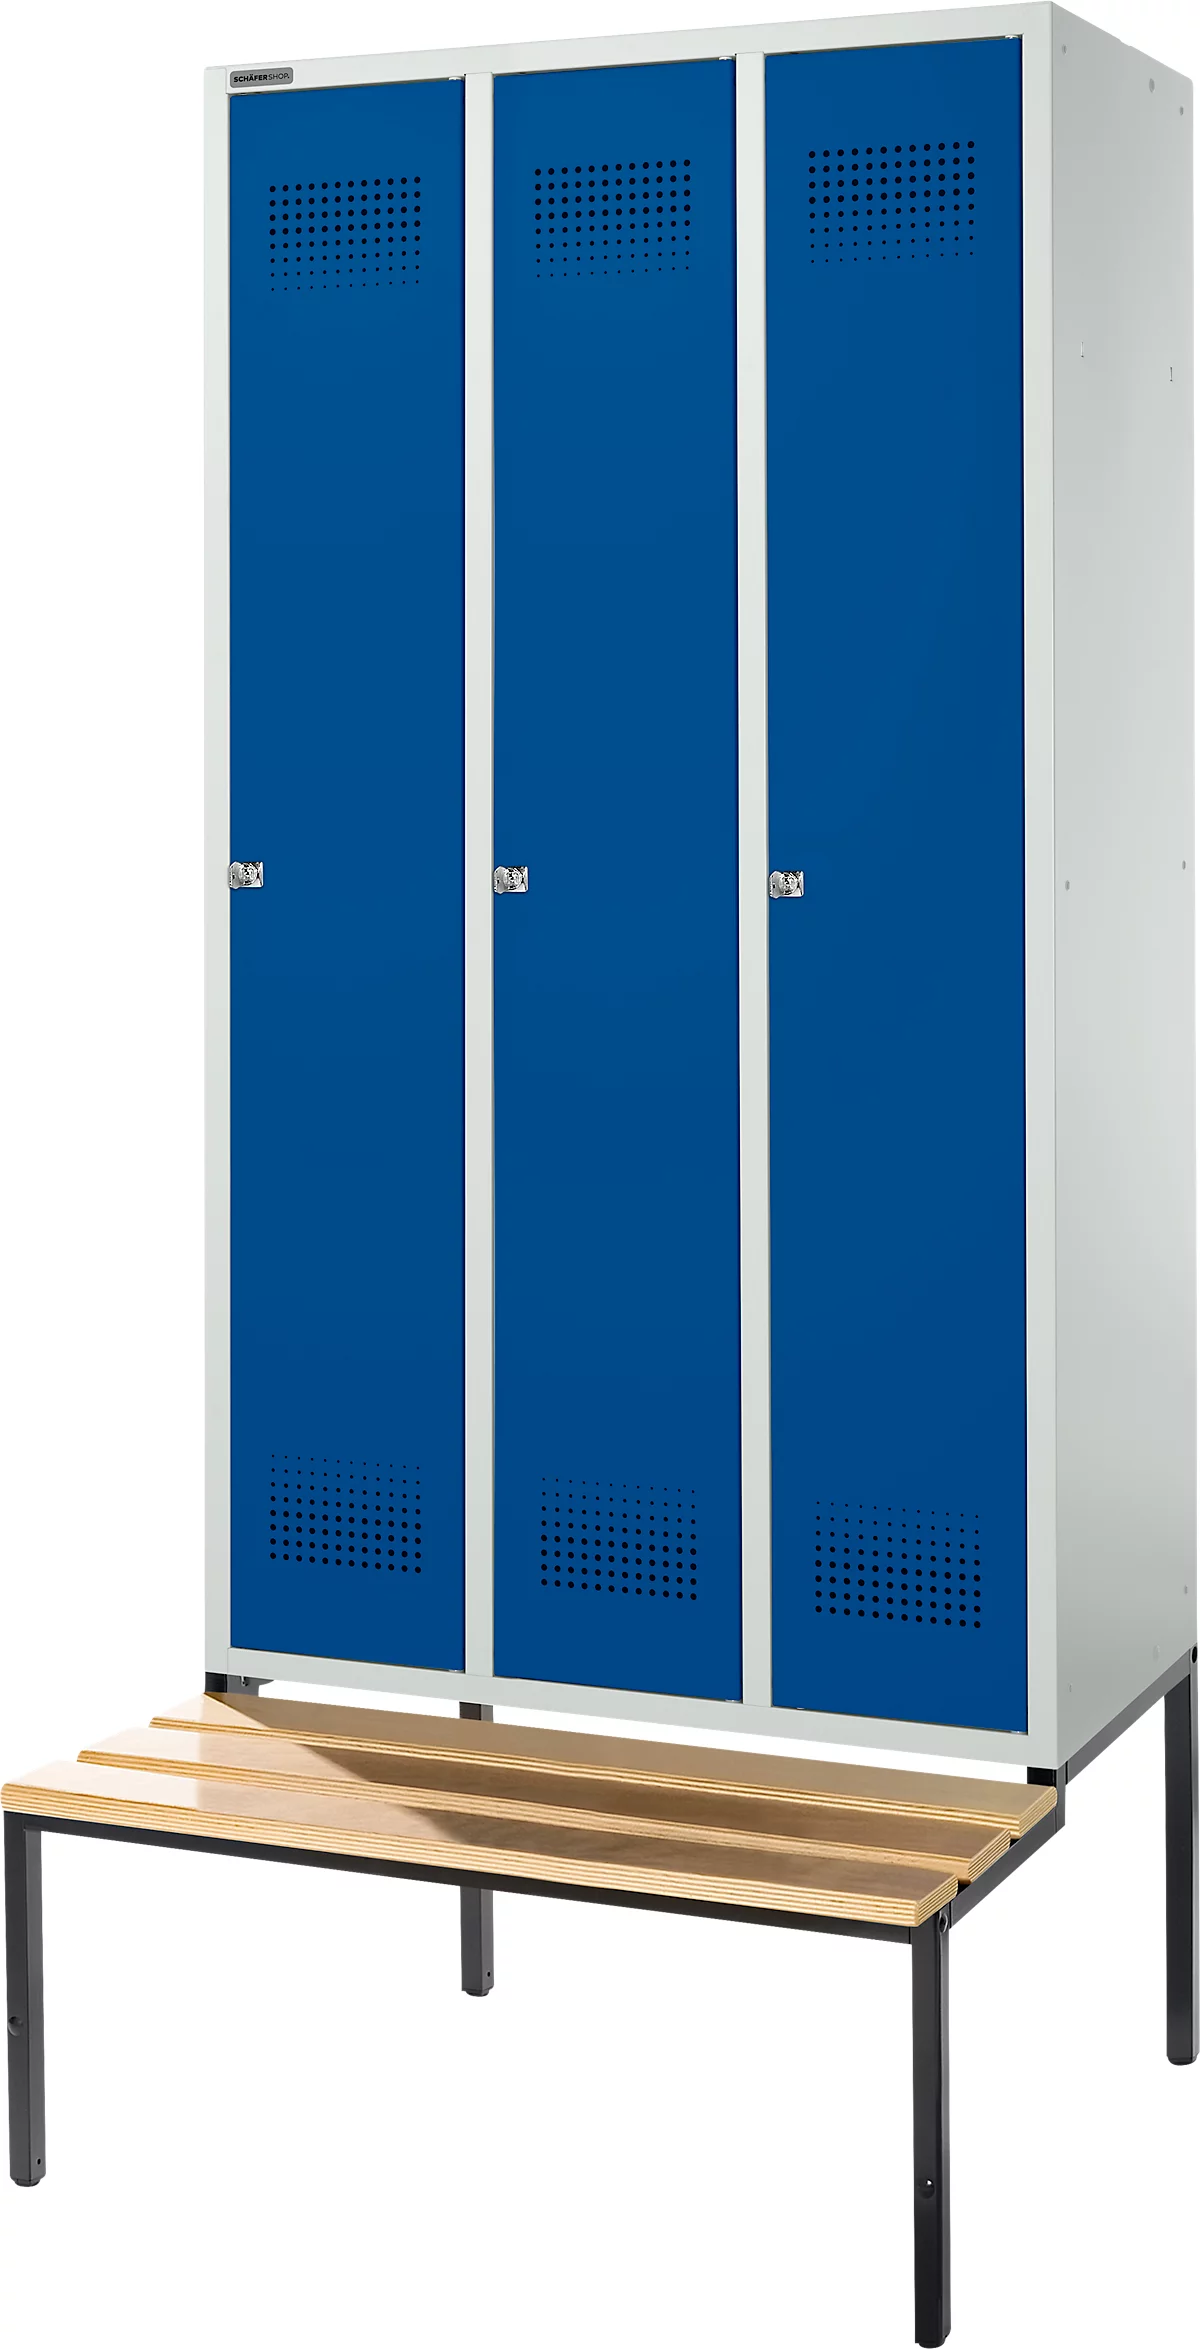 Schäfer Shop Genius Taquilla con banco, 3 compartimentos, anchura compartimento 300 mm, cerradura de cilindro, gris luminoso/azul genciana